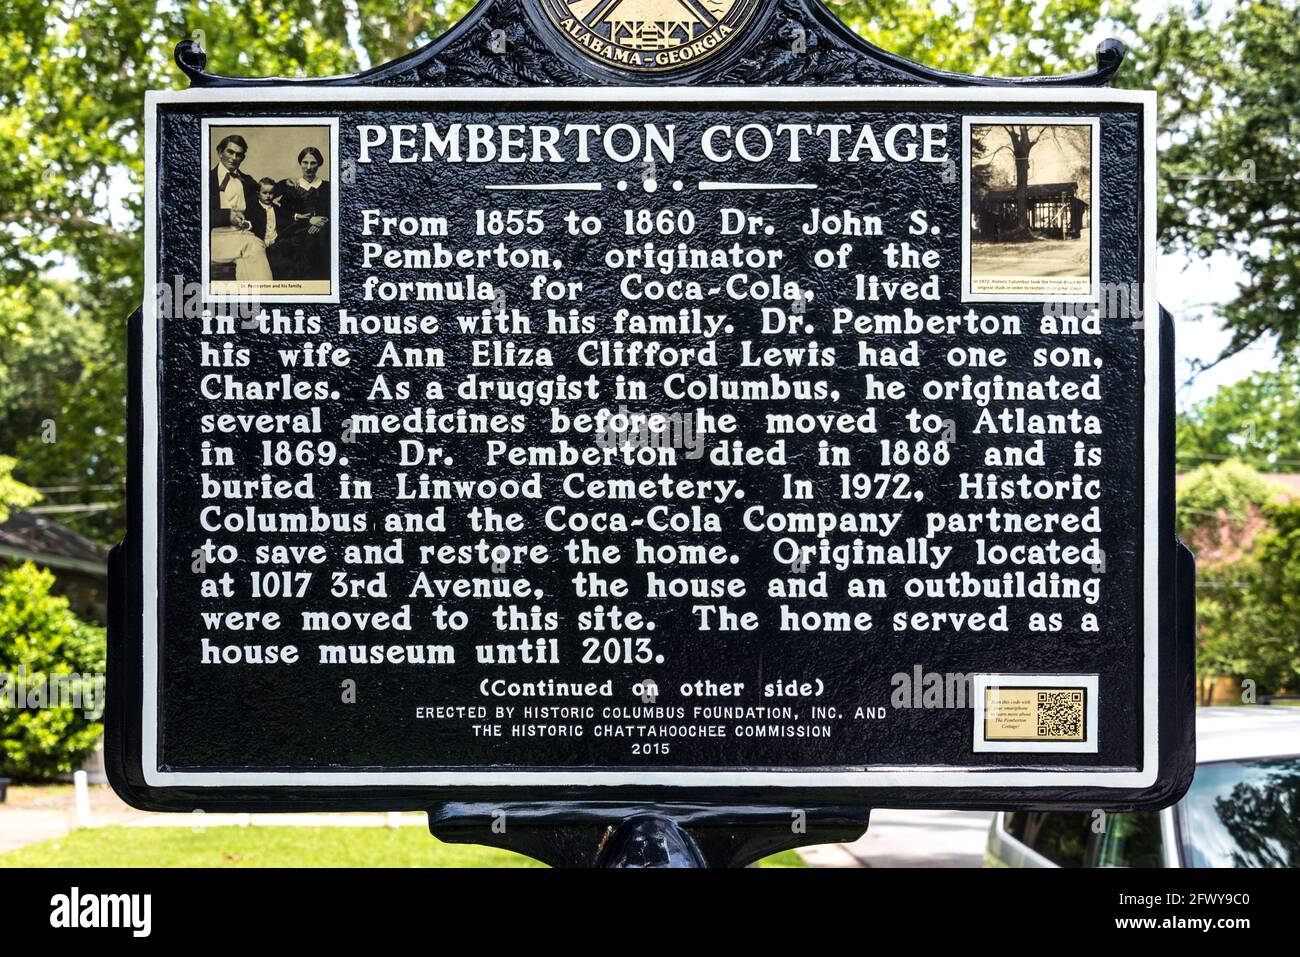 Marqueur historique du Pemberton Cottage, The Columbus, Géorgie, domicile du Dr John Stith Pemberton, inventeur de la pharmacie Coca-Cola. (ÉTATS-UNIS) Banque D'Images